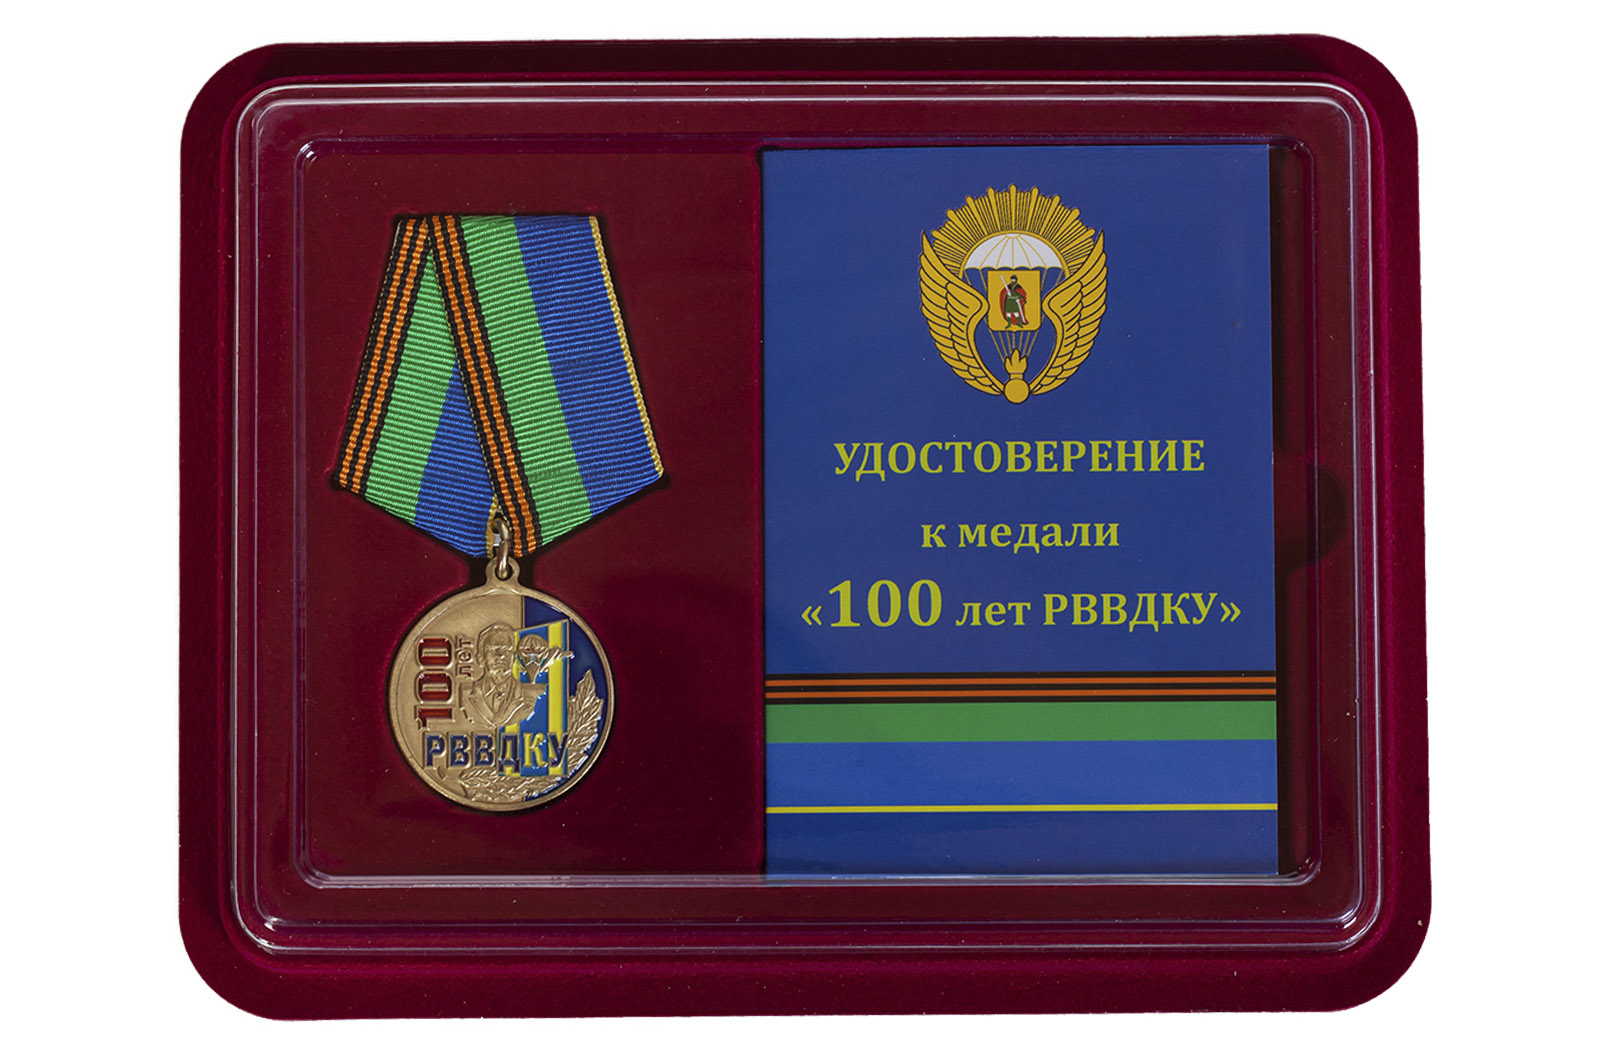 Купить памятную медаль 100 лет РВВДКУ в подарок мужчине